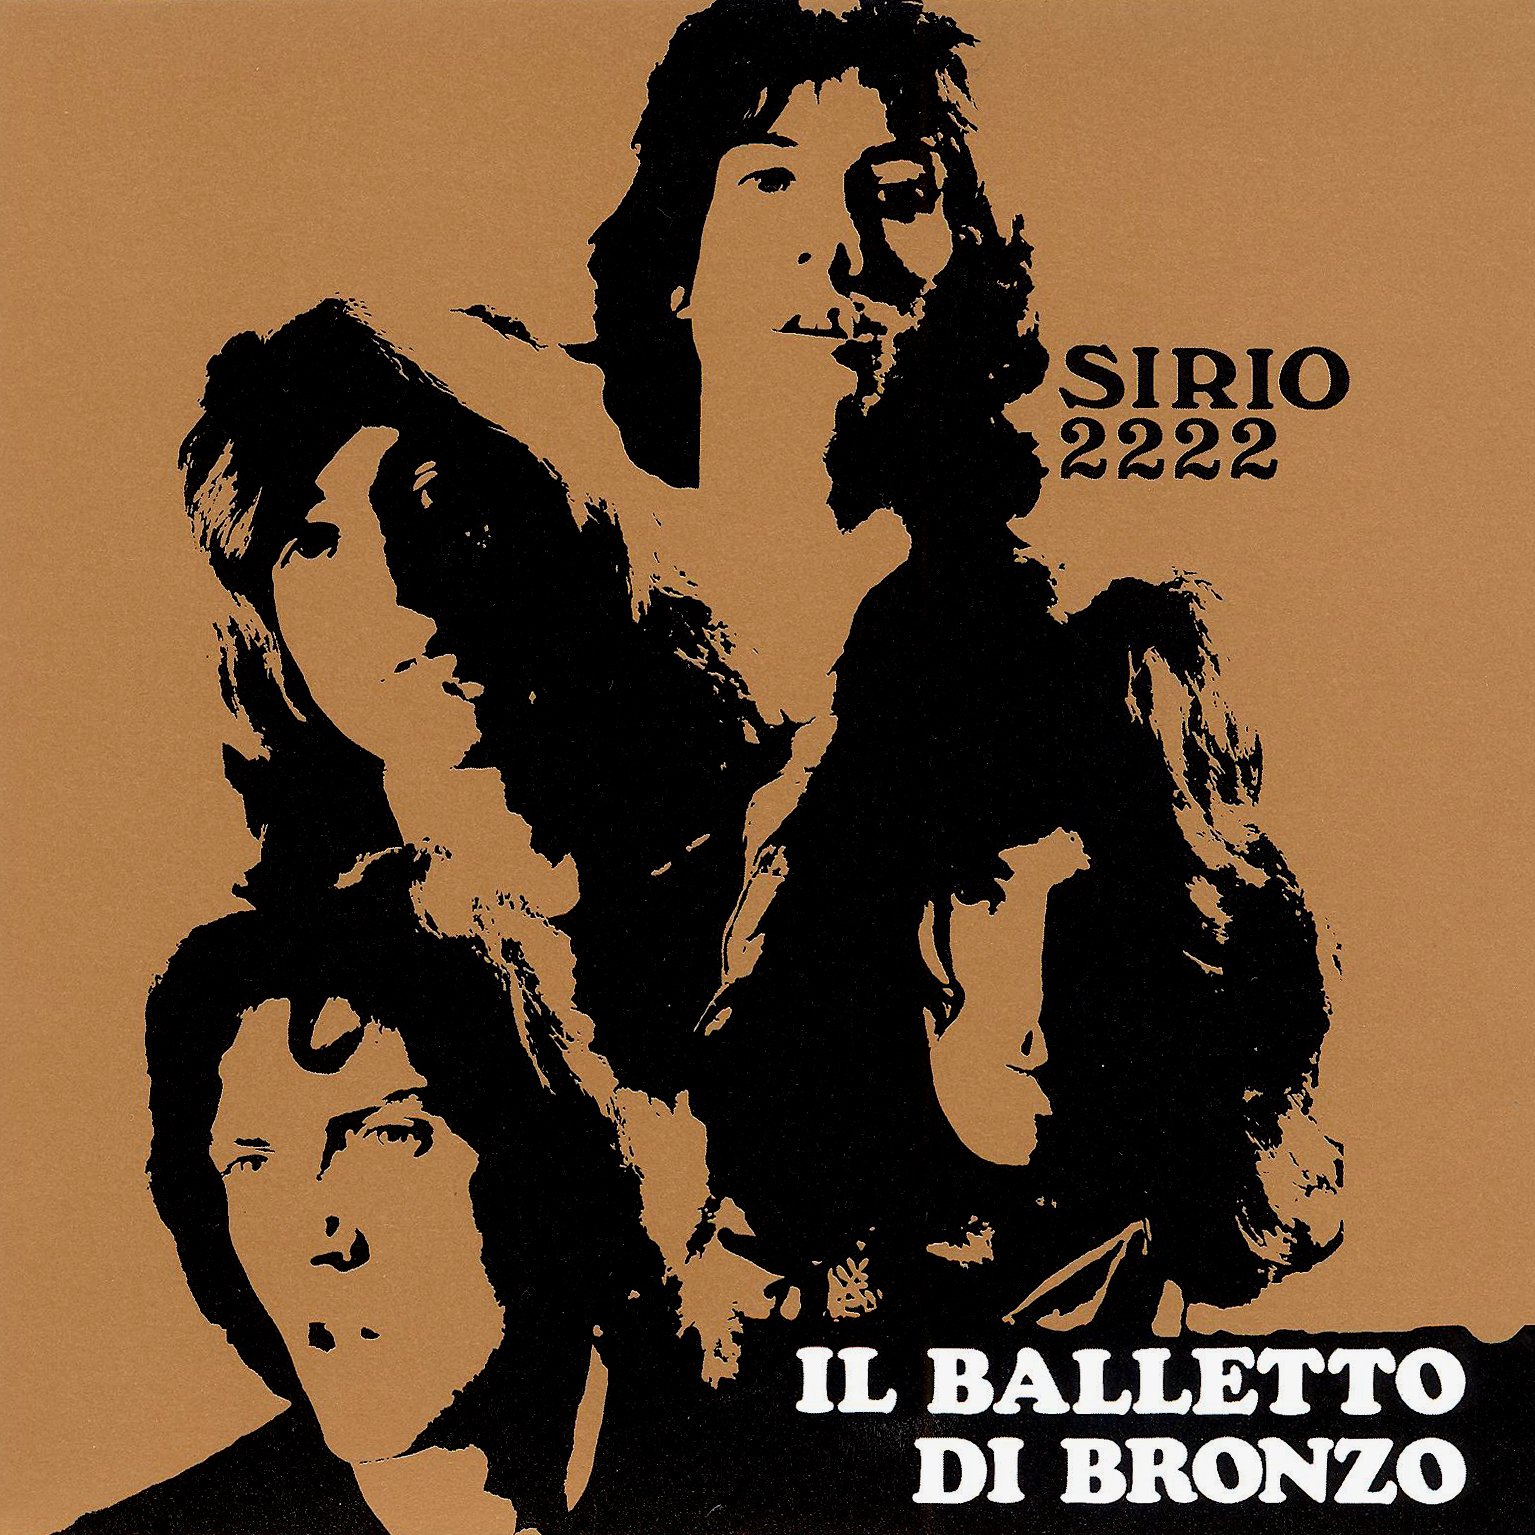 Il Balletto Di Bronzo - Sirio 2222 (1970)